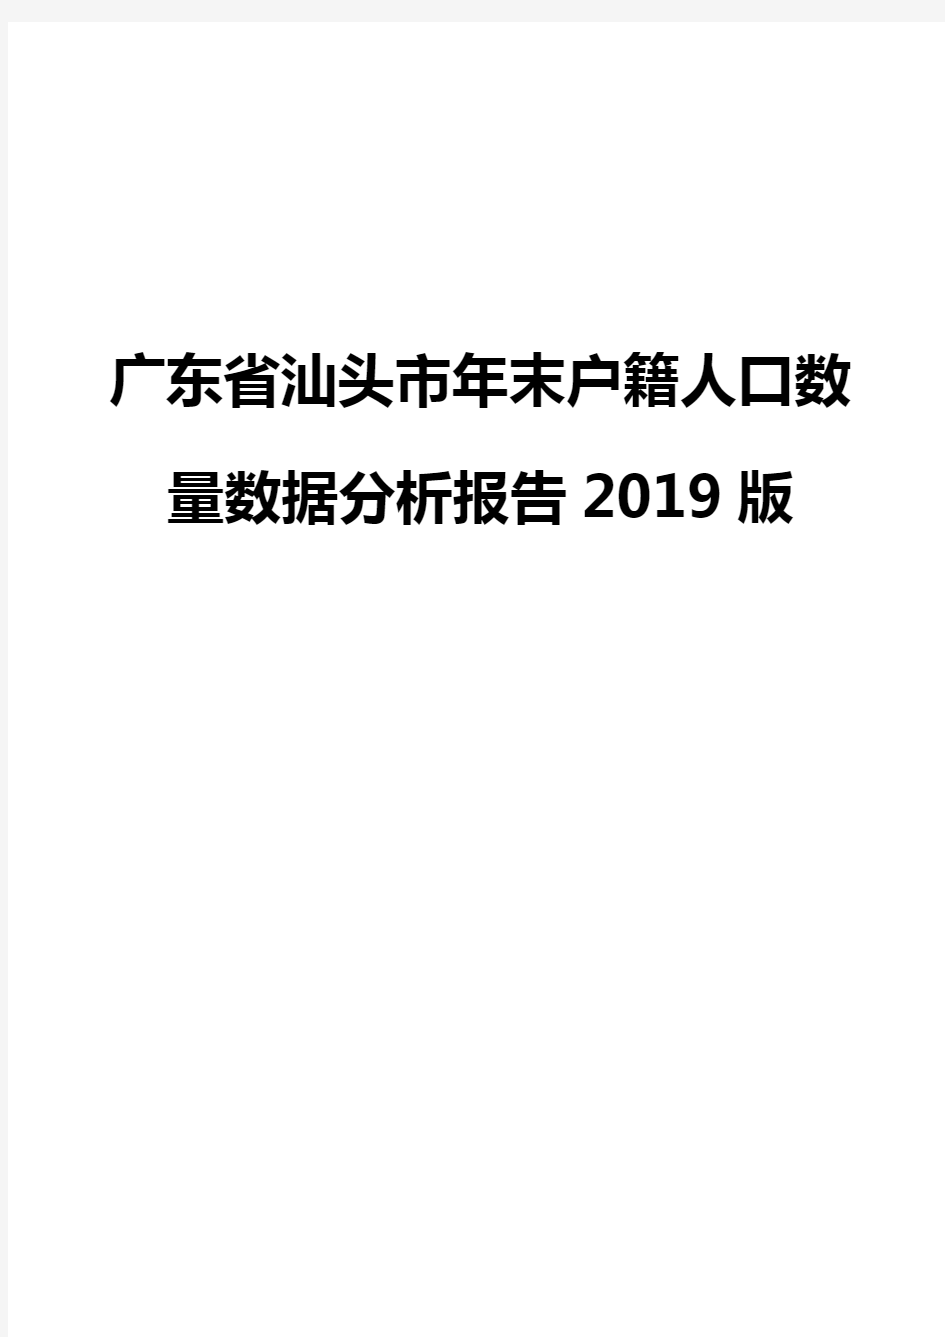 广东省汕头市年末户籍人口数量数据分析报告2019版